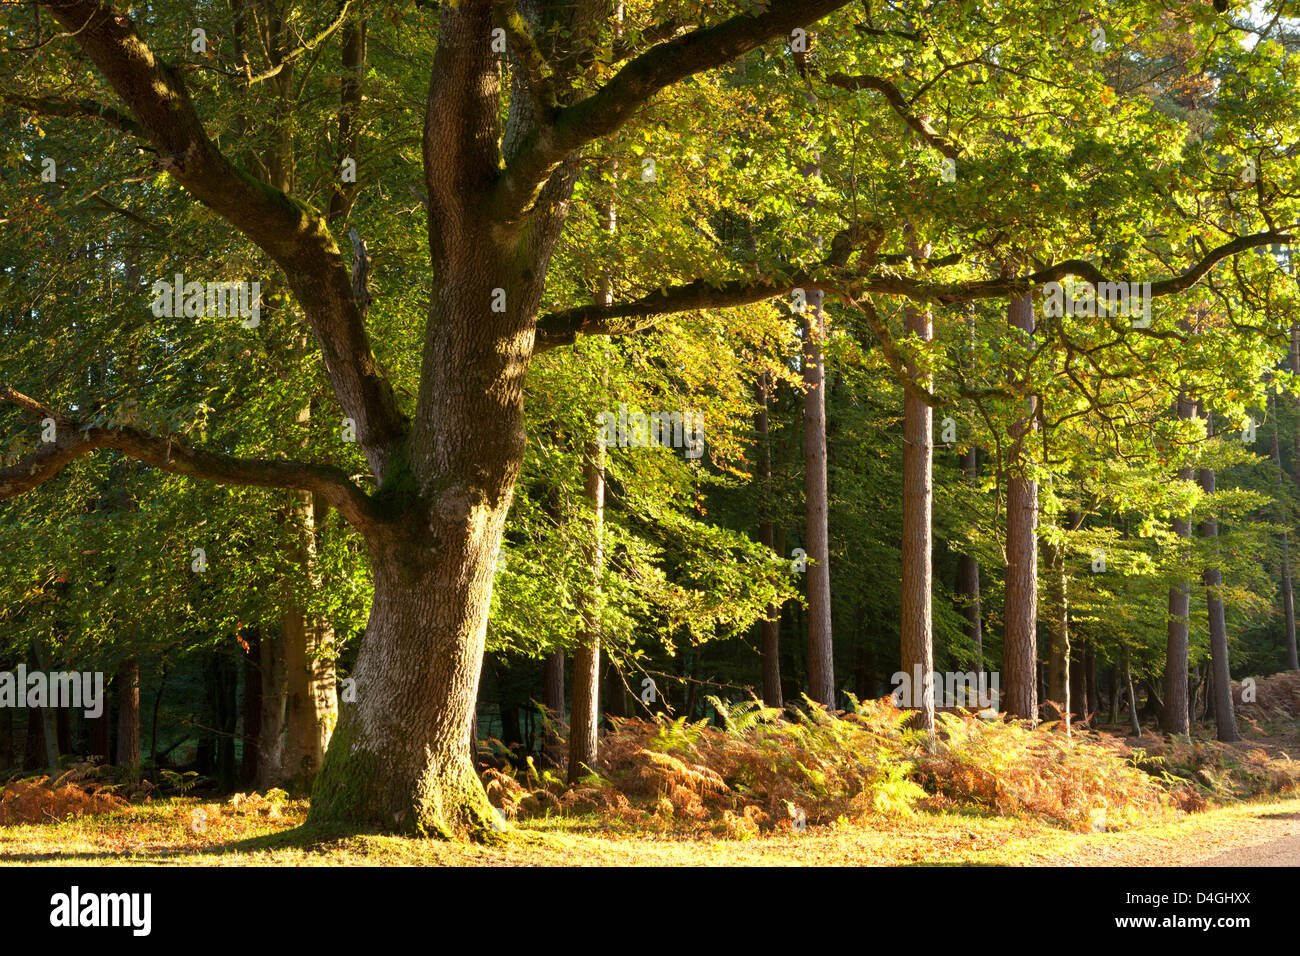 La lumière du soleil du matin illumine le feuillage d'automne dans le parc national New Forest, Hampshire, Angleterre. L'automne (octobre) Banque D'Images